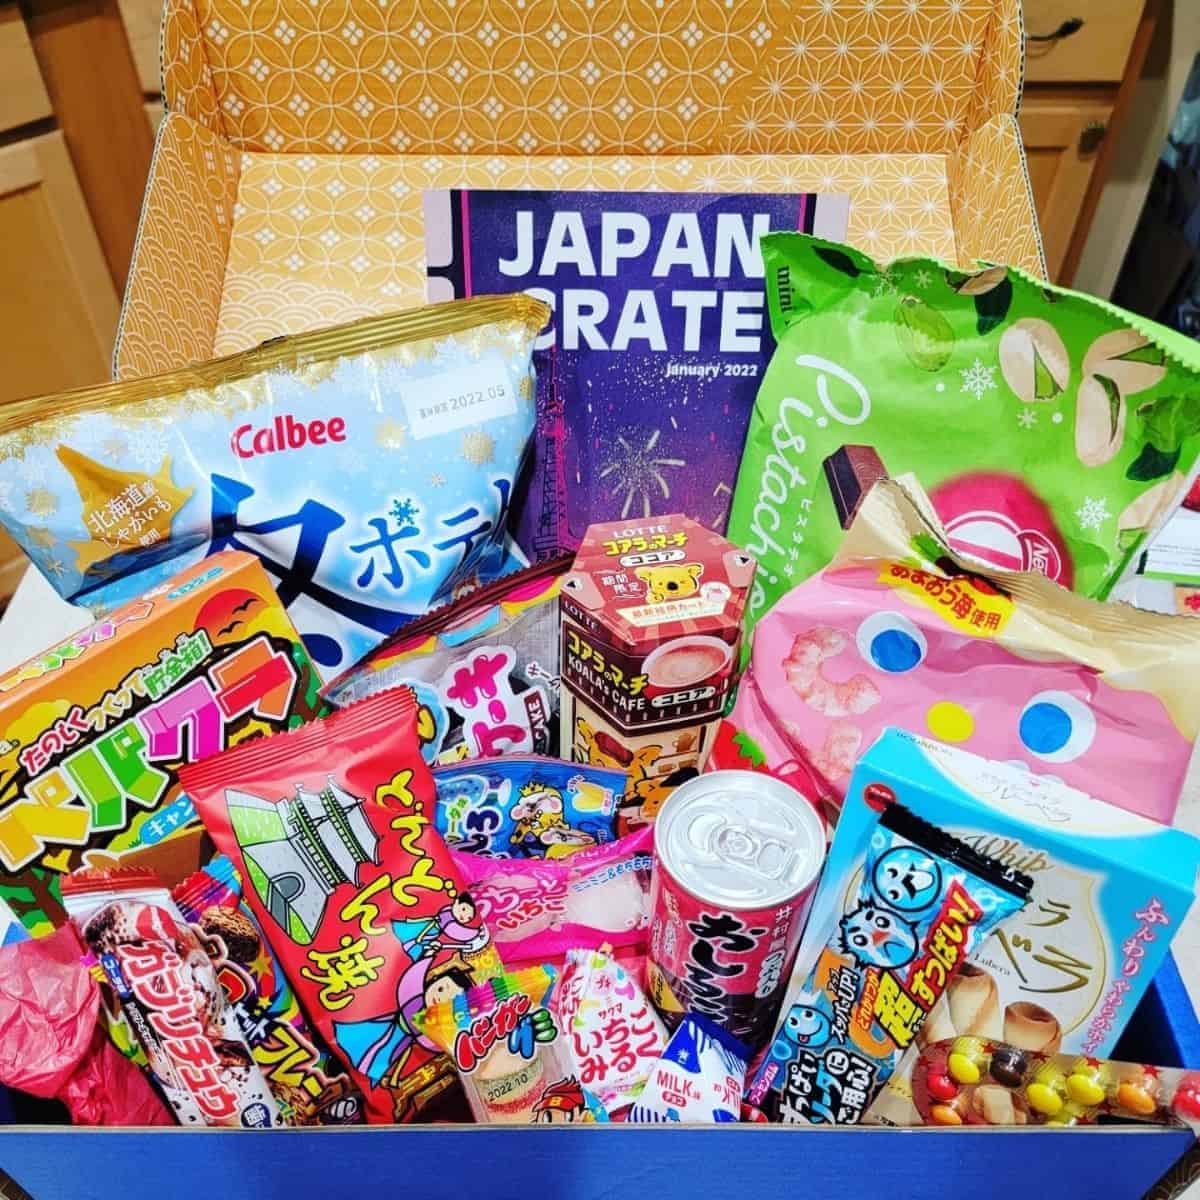 Japan Crate tidbit pack